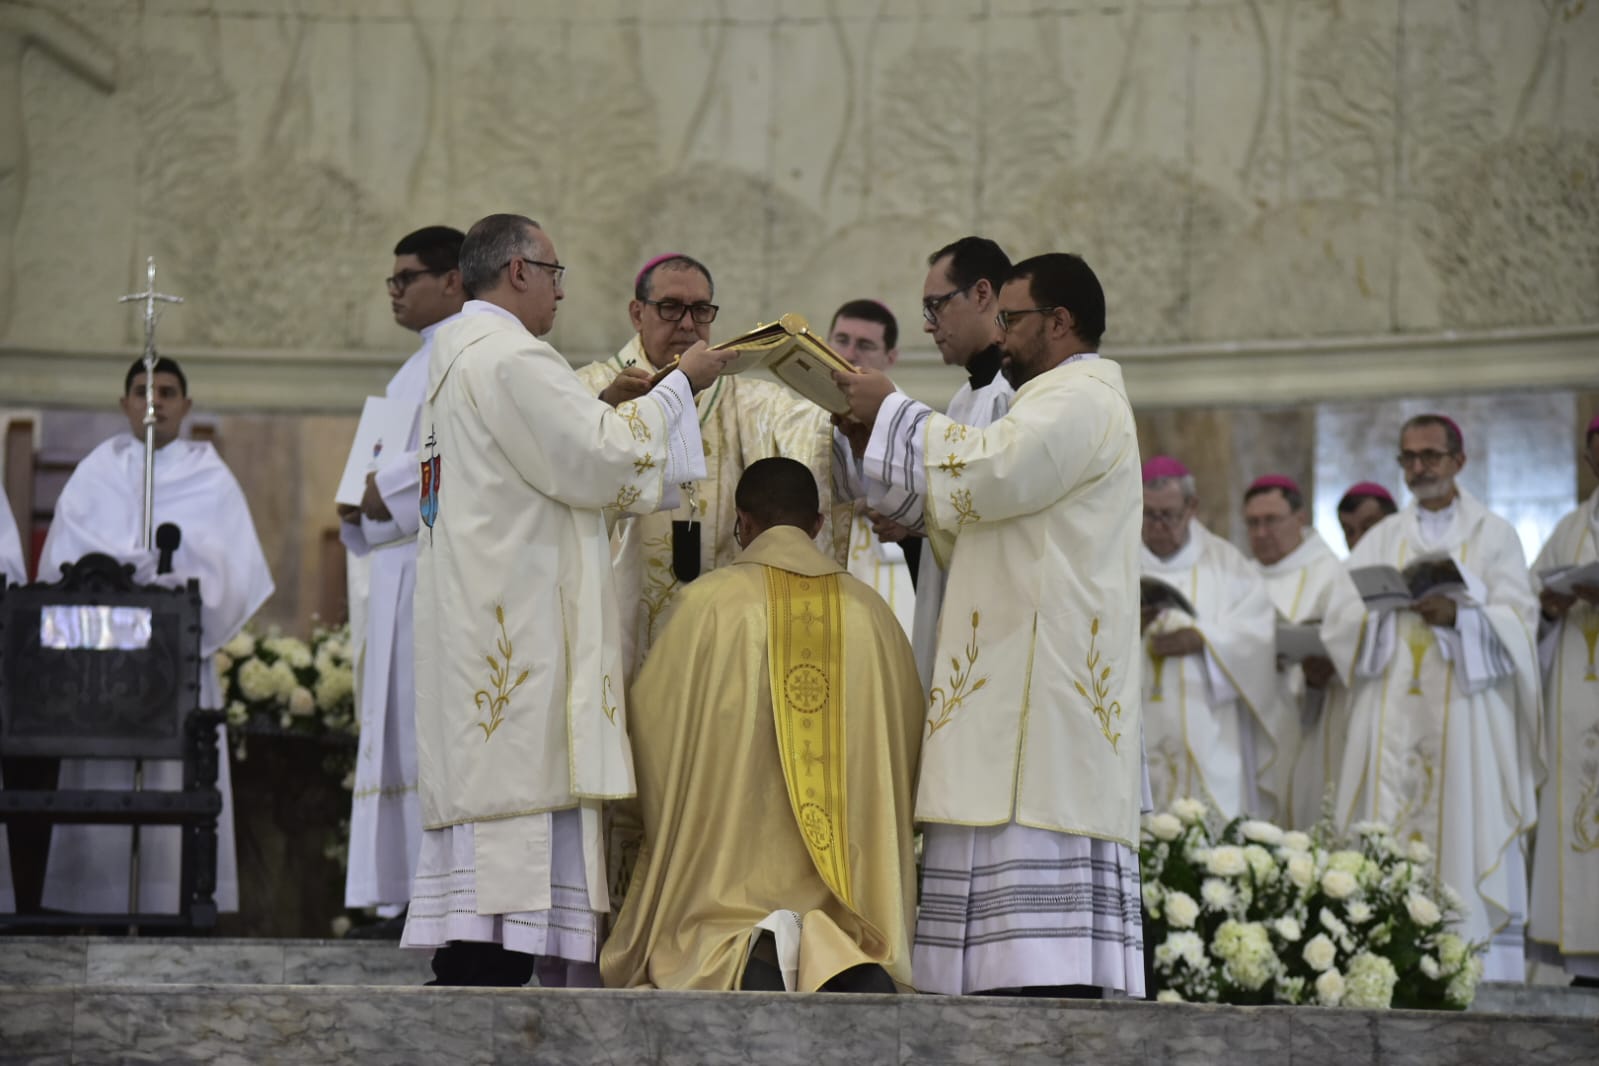 La ordenación fue presidida por el monseñor Pablo Salas, arzobispo de Barranquilla.